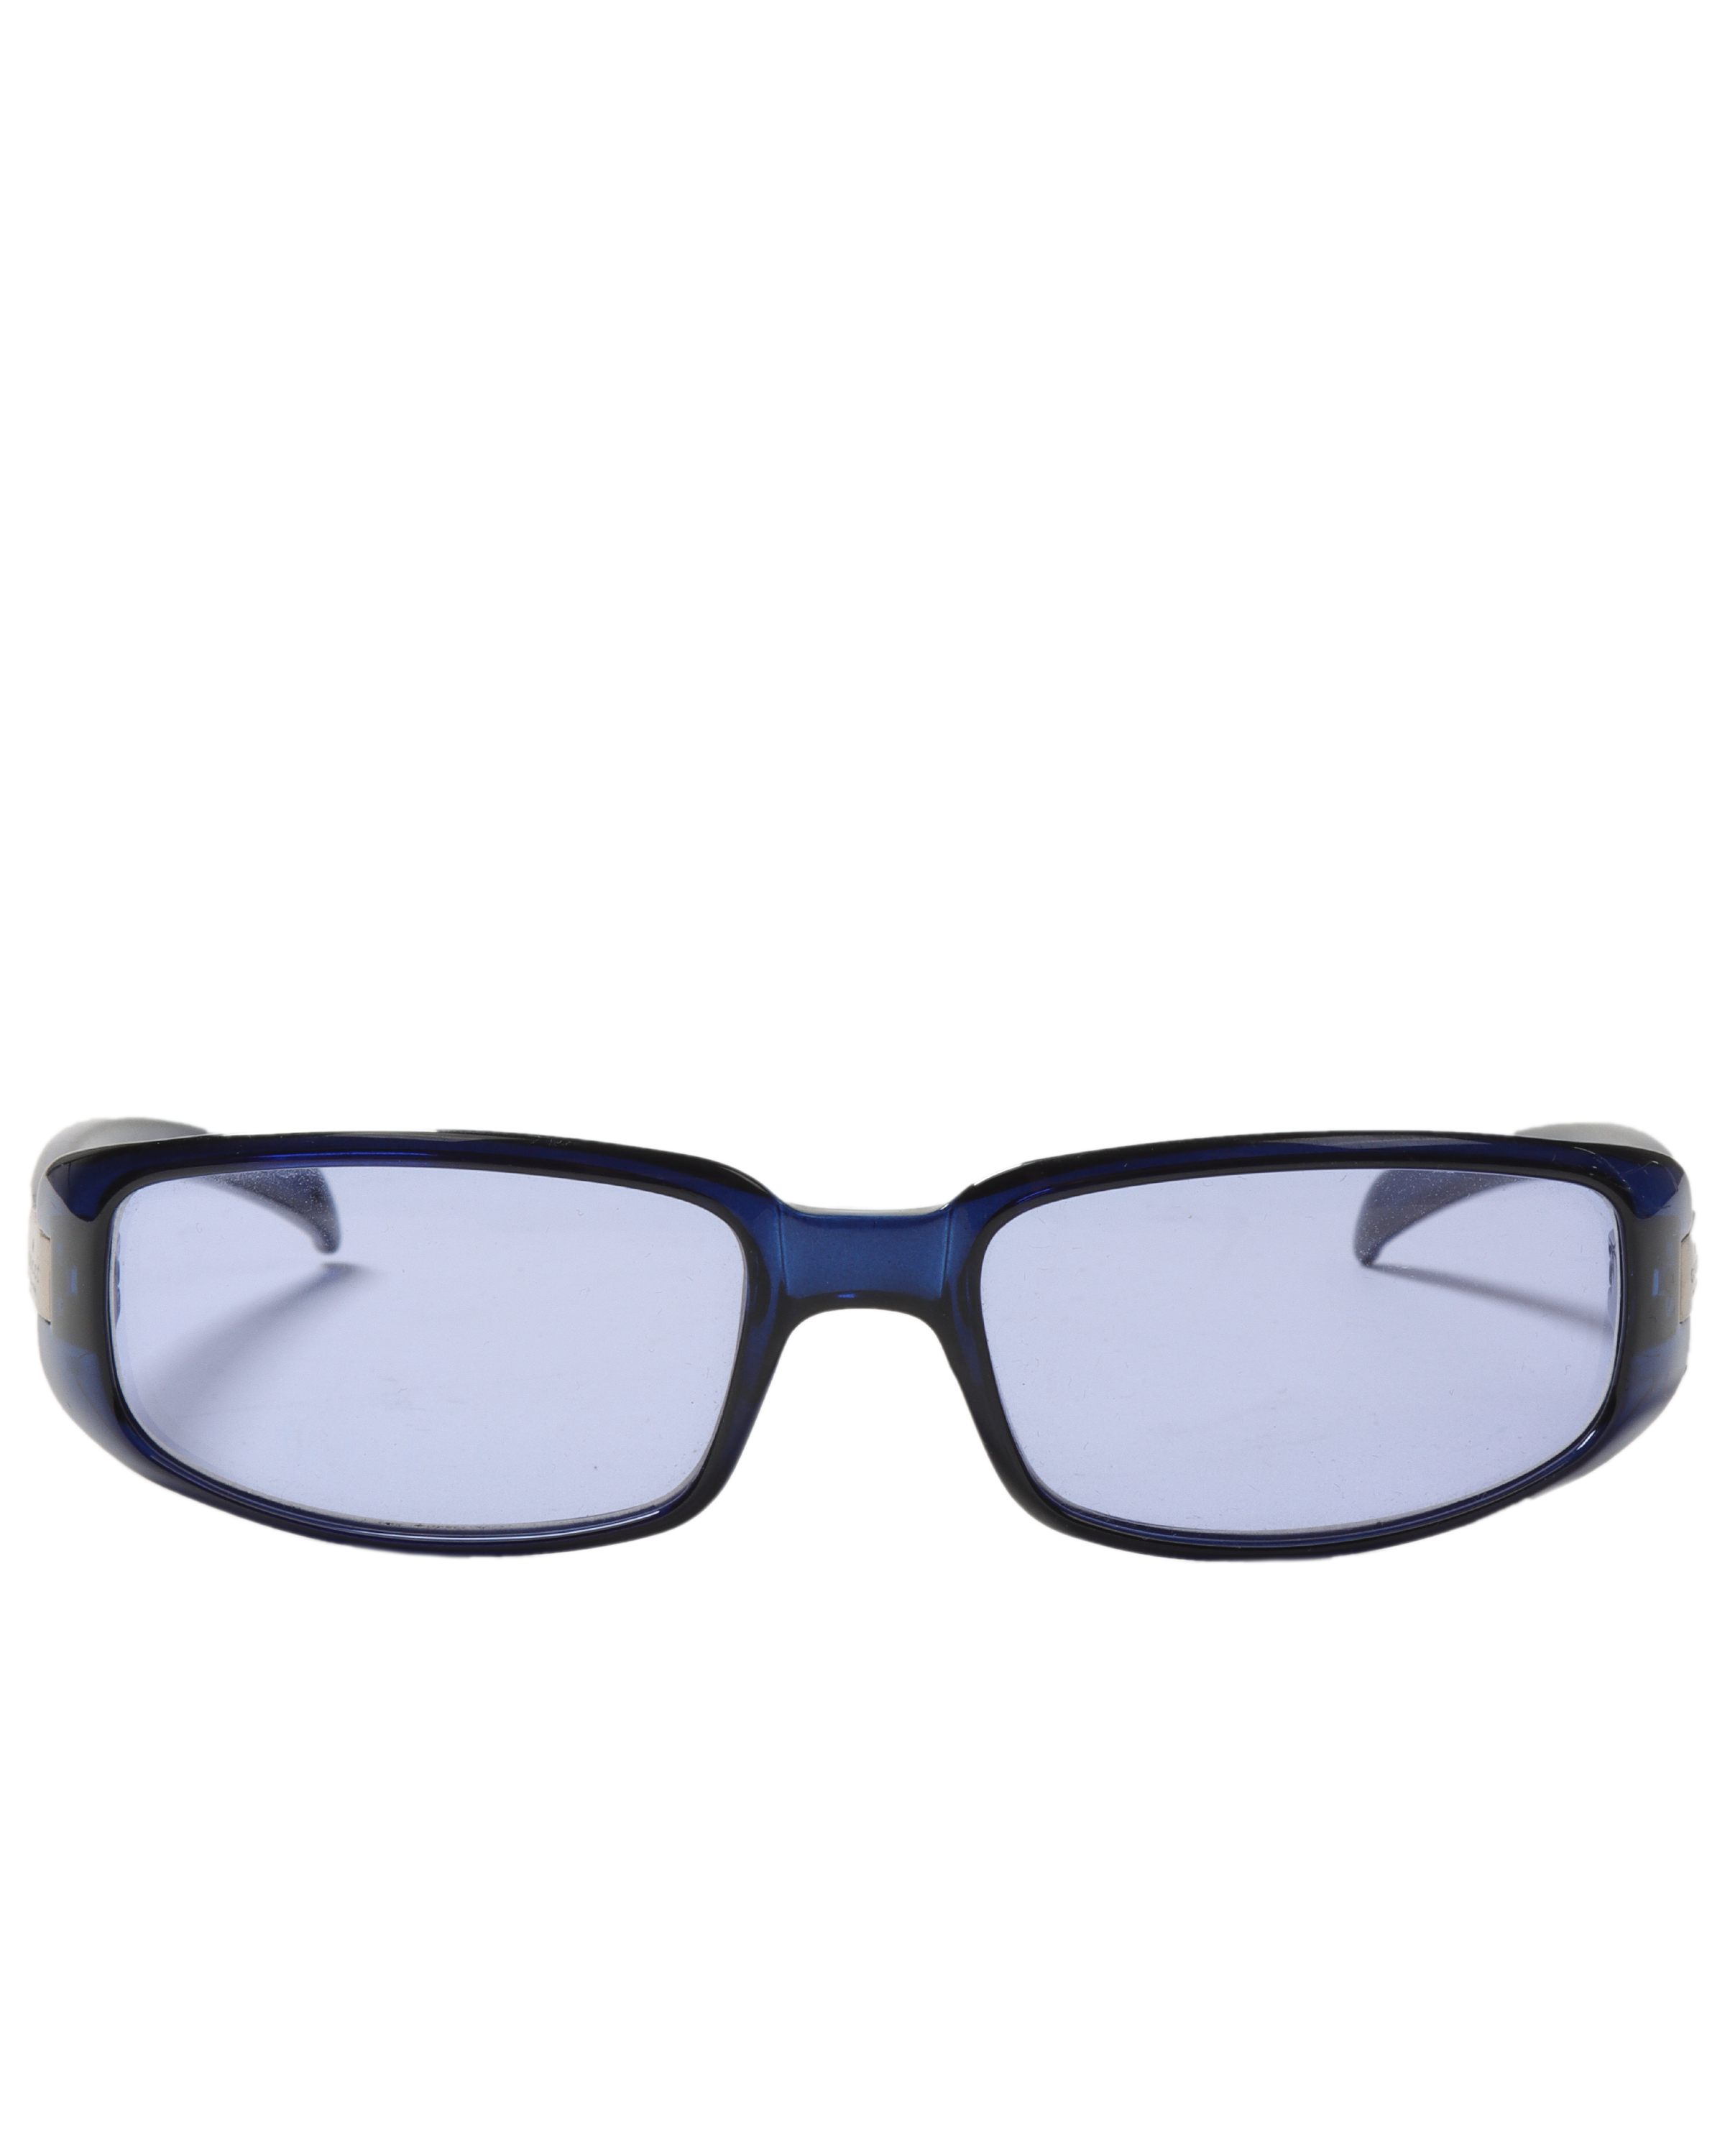 Vintage Blue Oval Sunglasses